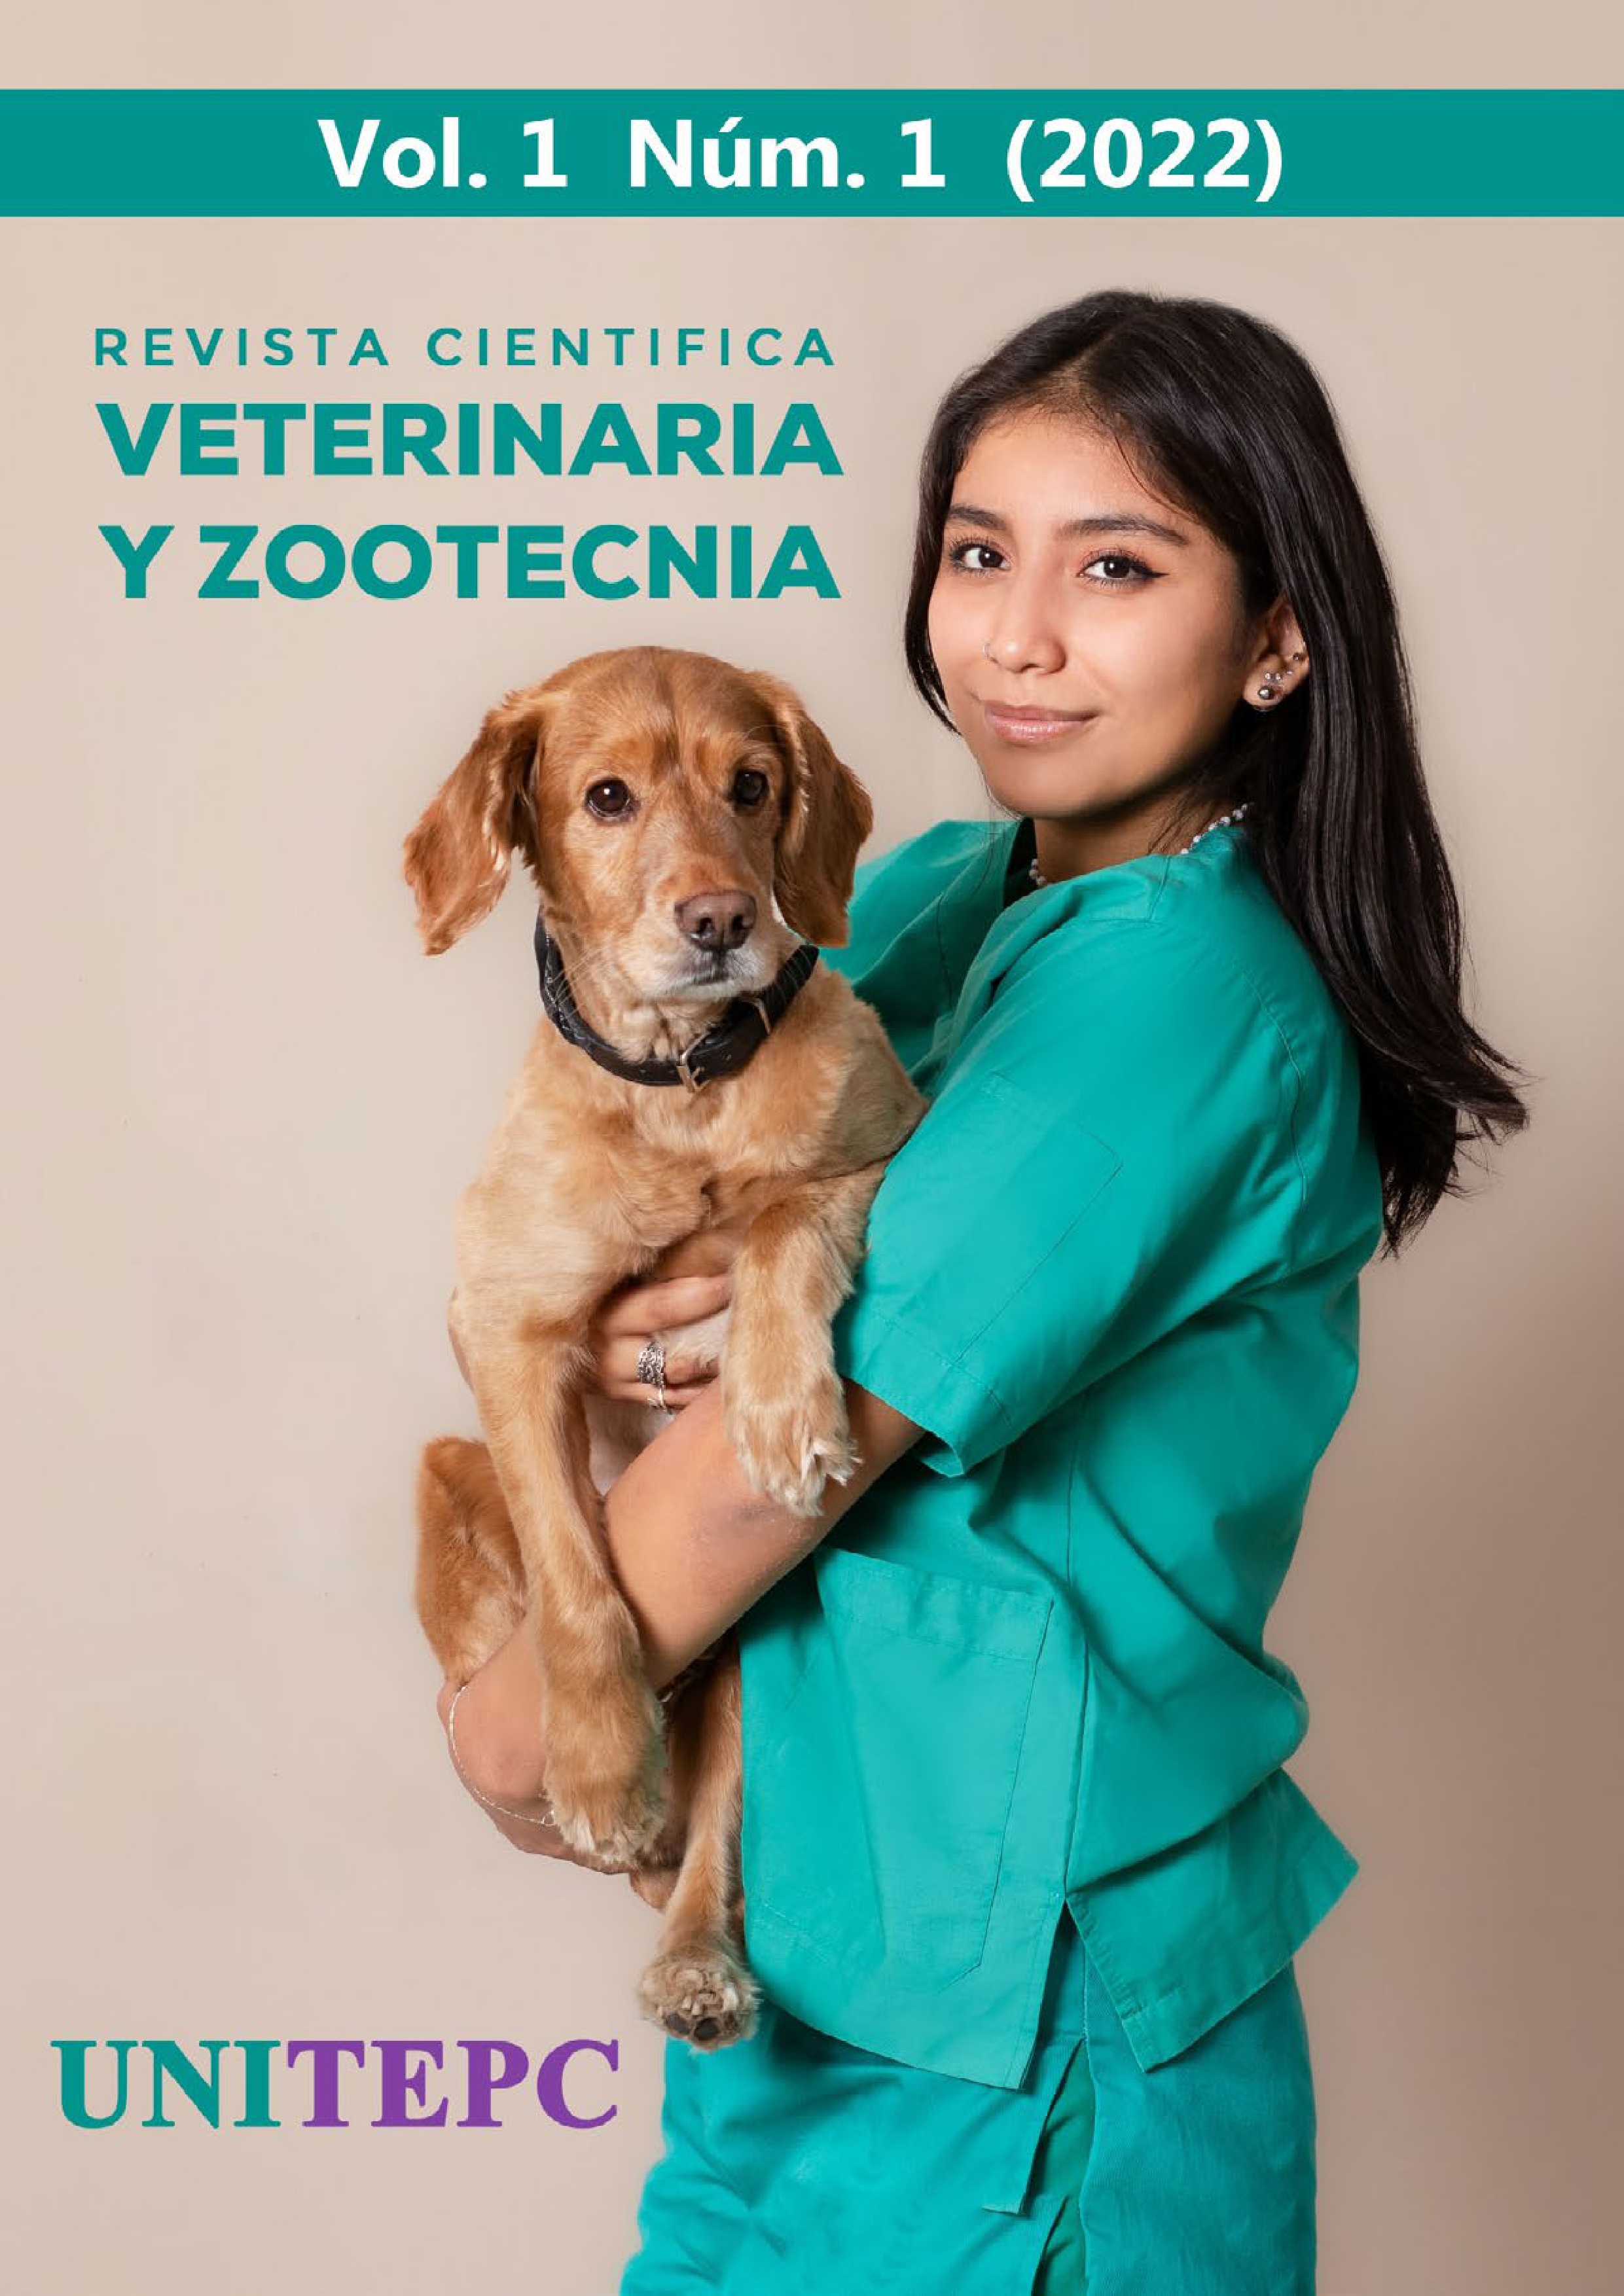 					View Vol. 1 No. 1 (2022): Revista Científica de Veterinaria y Zootecnia UNITEPC
				